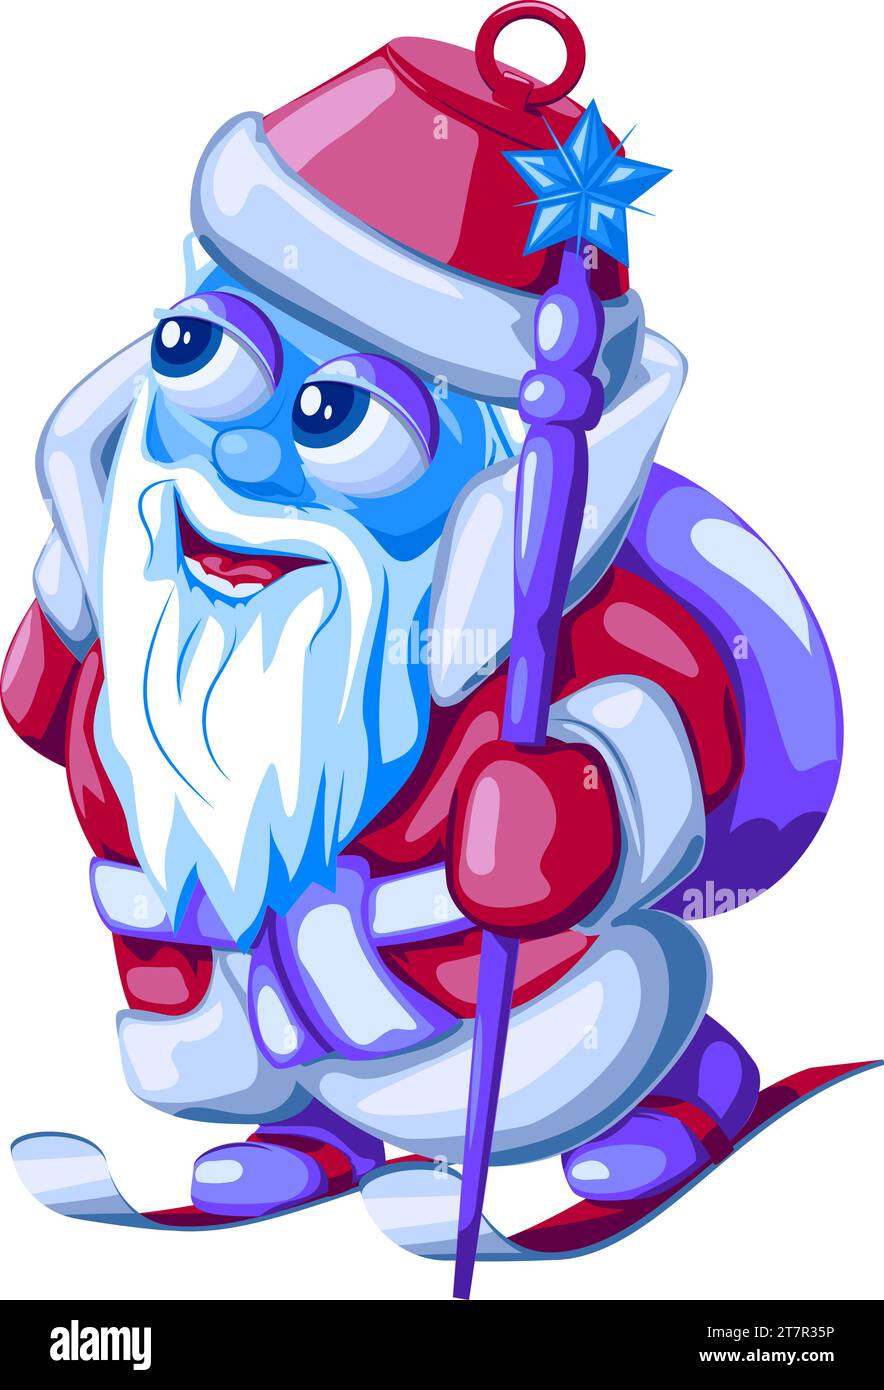 Weihnachtsbaumspielzeug Weihnachtsmann auf Skiern mit Geschenktüte und Personal. Vektor-Illustration des Silvesterspielzeugs Santa Claus (Ded Moroz) auf Skiern in Cartoon Stock Vektor